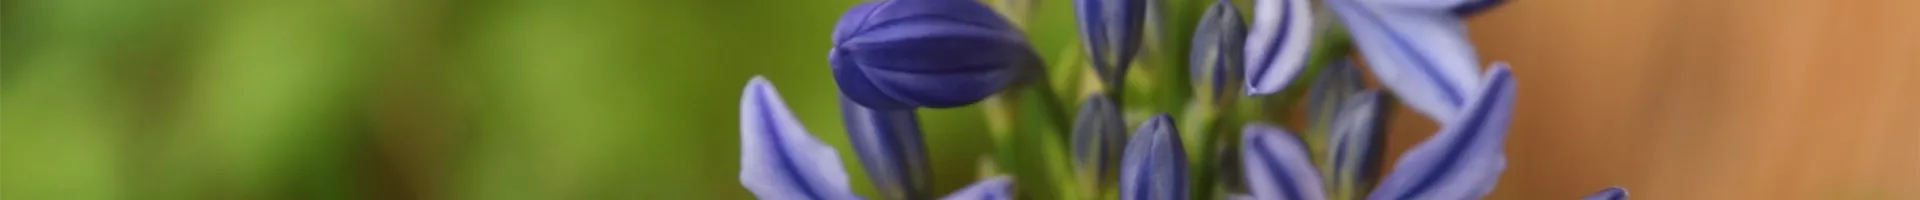 Afrikanische Schmucklilie - Einpflanzen in ein Gefäß (Thumbnail).jpg